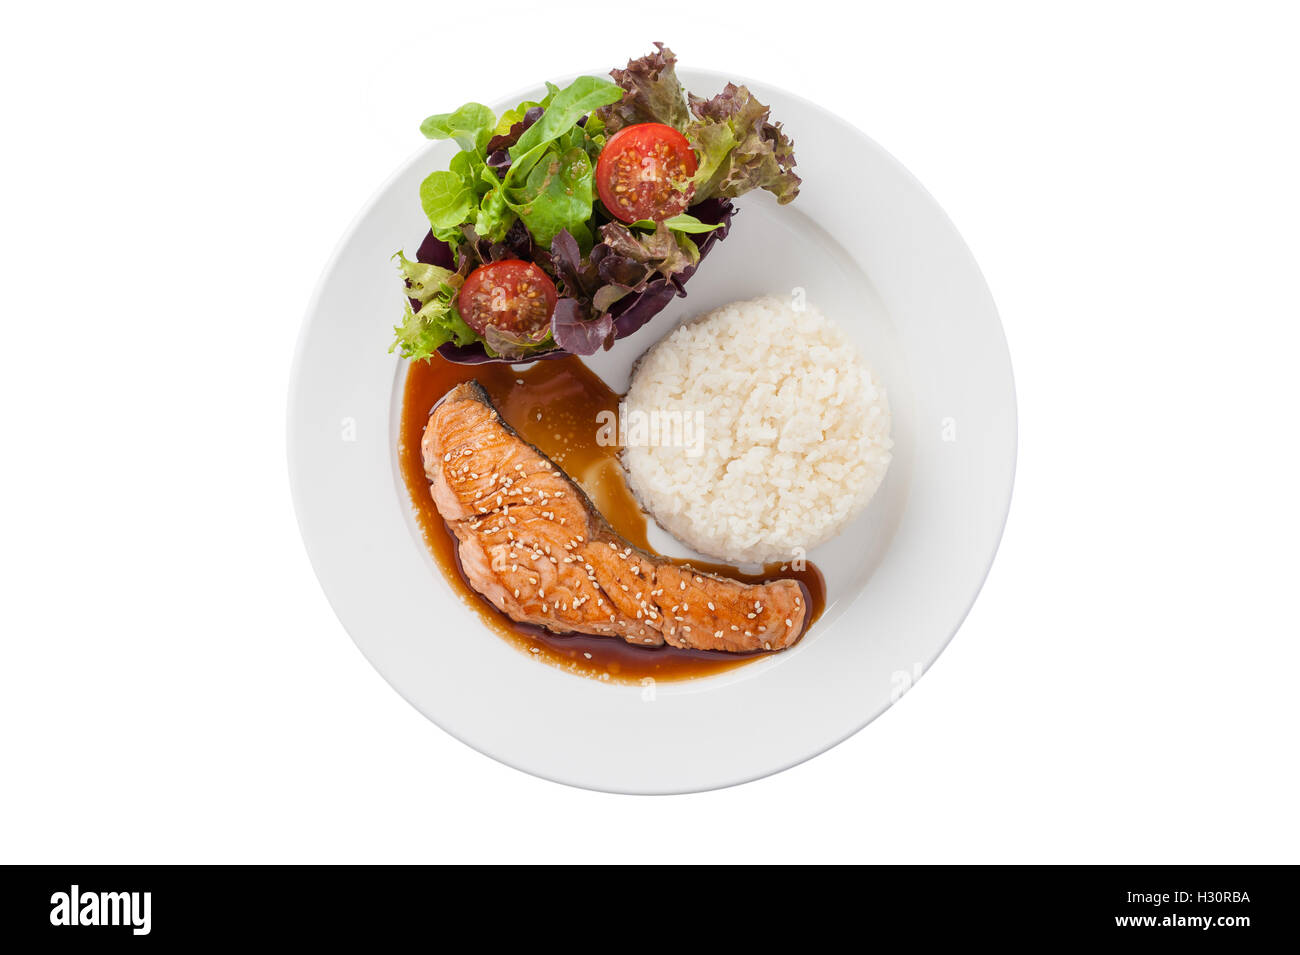 Vue de dessus de style fusion food habillé de saumon grillé avec sauce teriyaki sucrée japonaise (y compris le riz thaïlandais) garni de légumes Banque D'Images